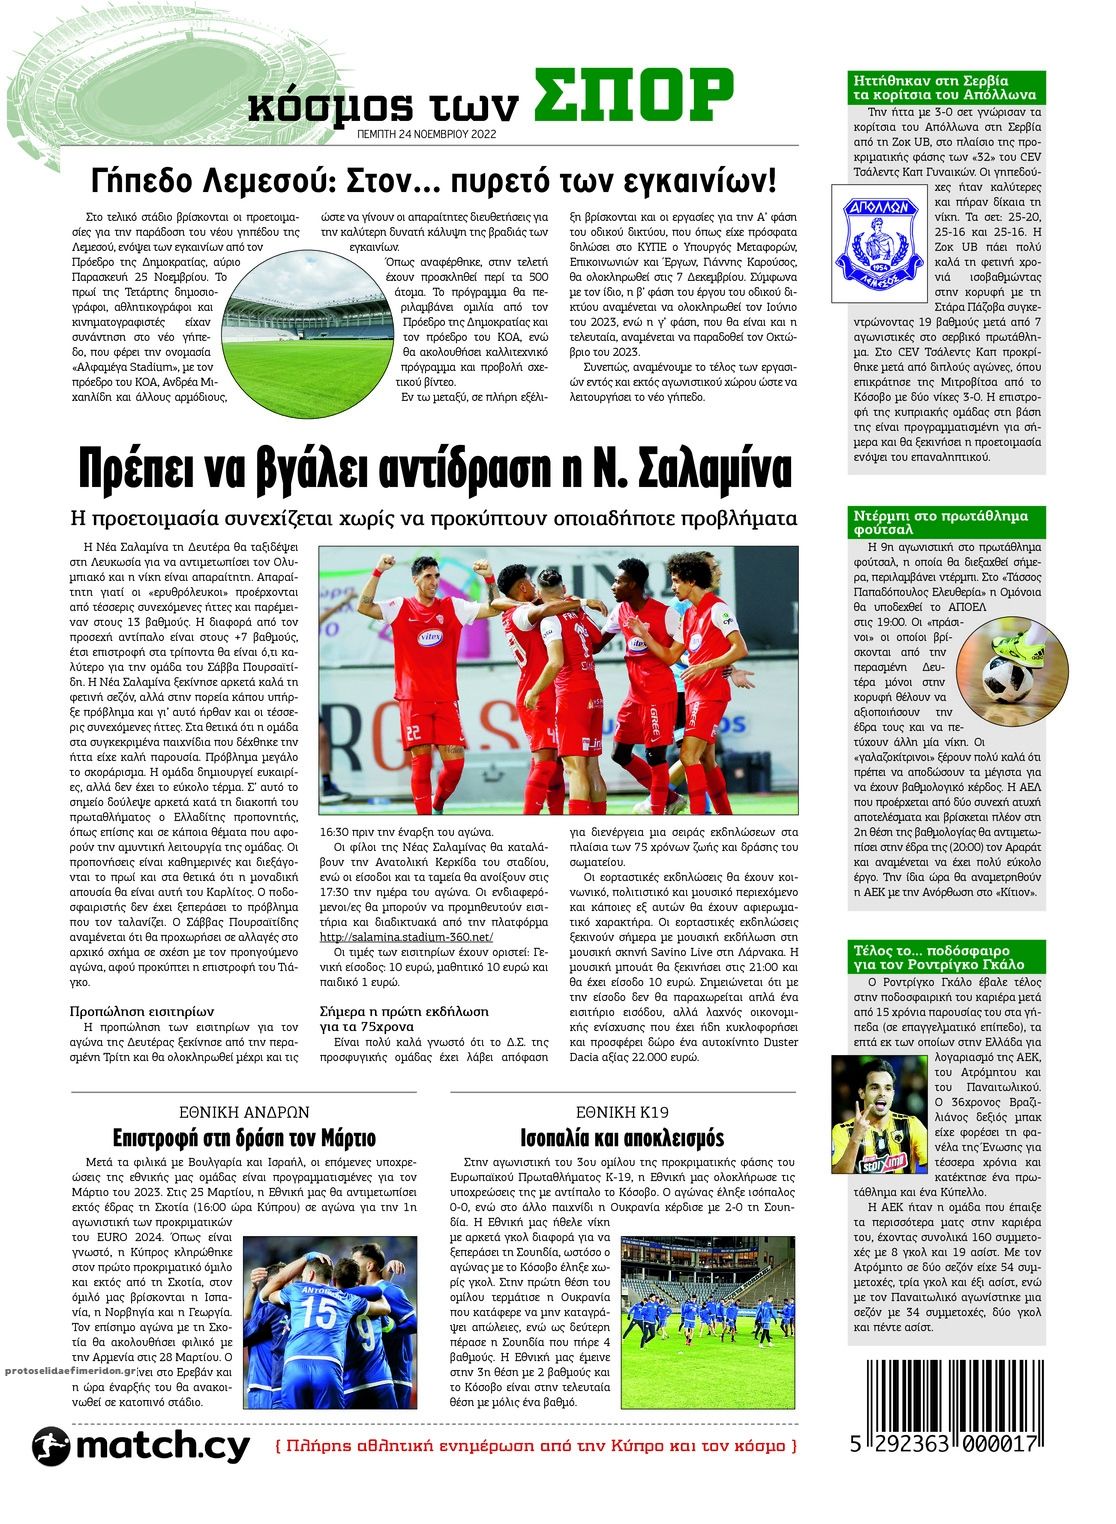 Οπισθόφυλλο εφημερίδας Χαραυγή Κυπρου